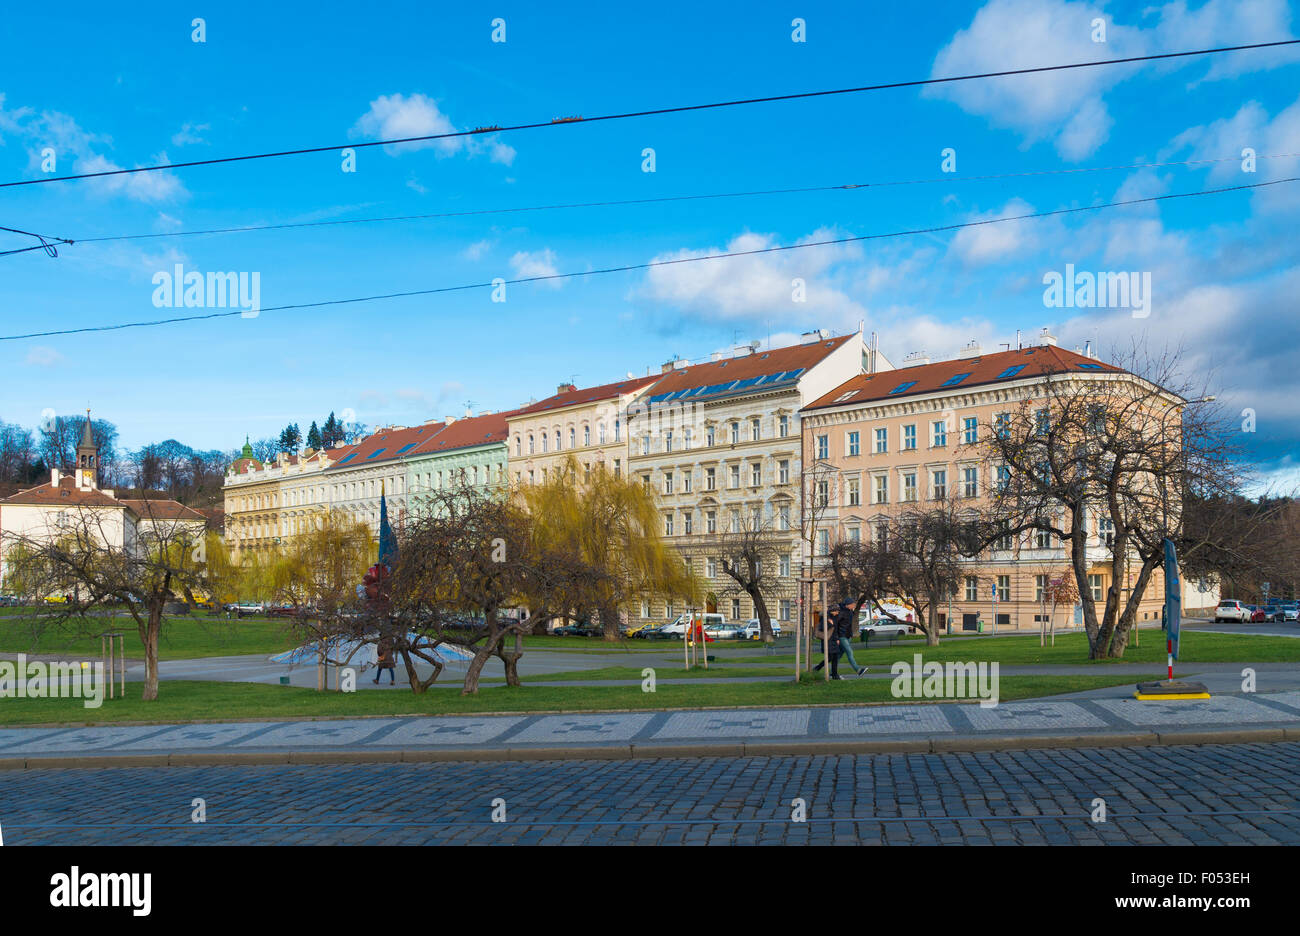 Típico de las fachadas de las casas en el centro de la ciudad. Praga es considerada como una de las ciudades más bellas Foto de stock